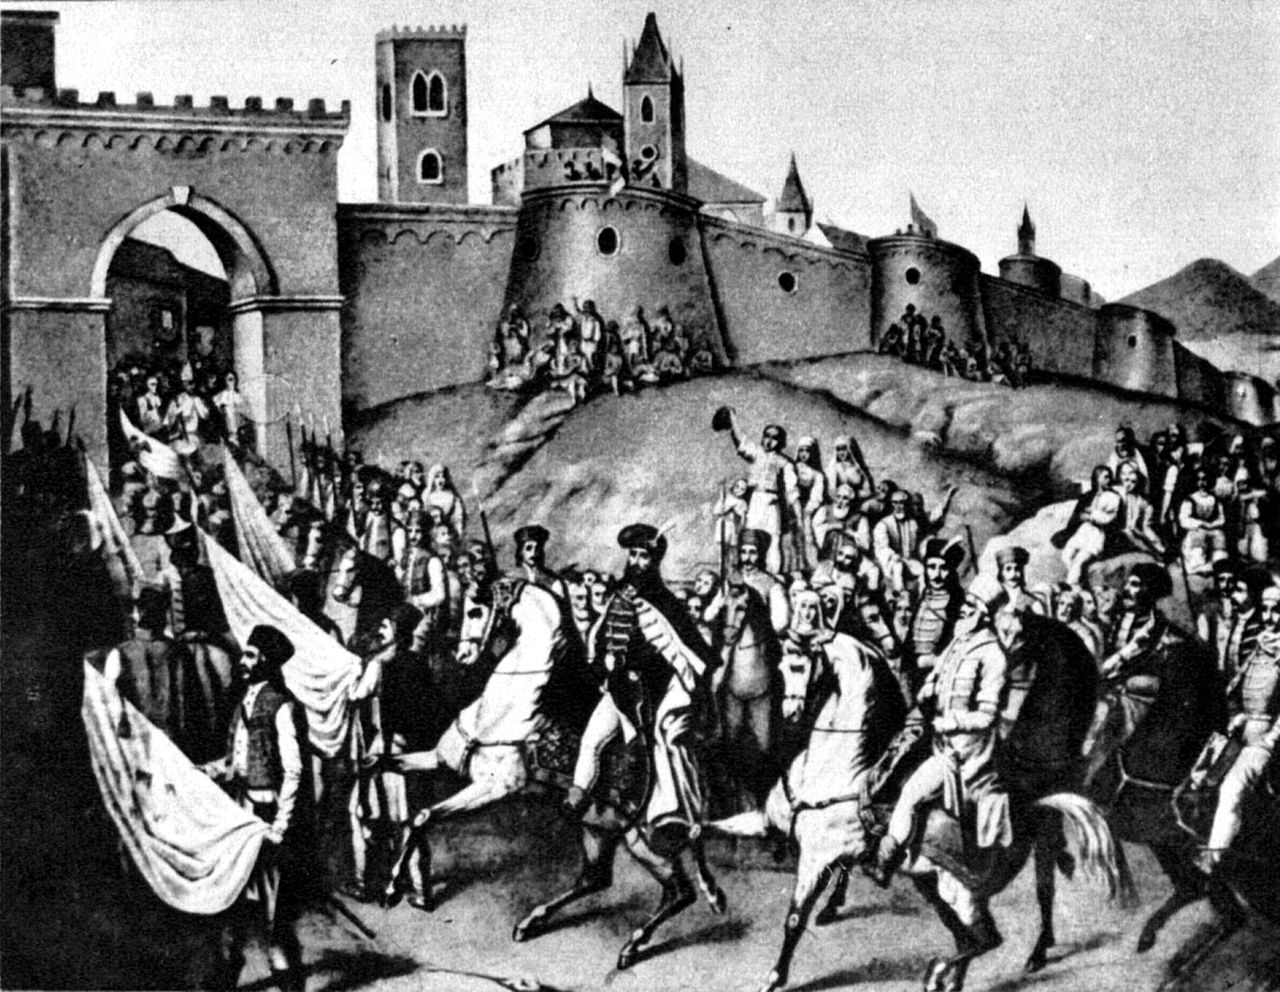 1 noiembrie 1599: Intrarea triumfală în Alba Iulia a lui Mihai Viteazul. Transilvania intra sub stăpânirea domnului muntean.